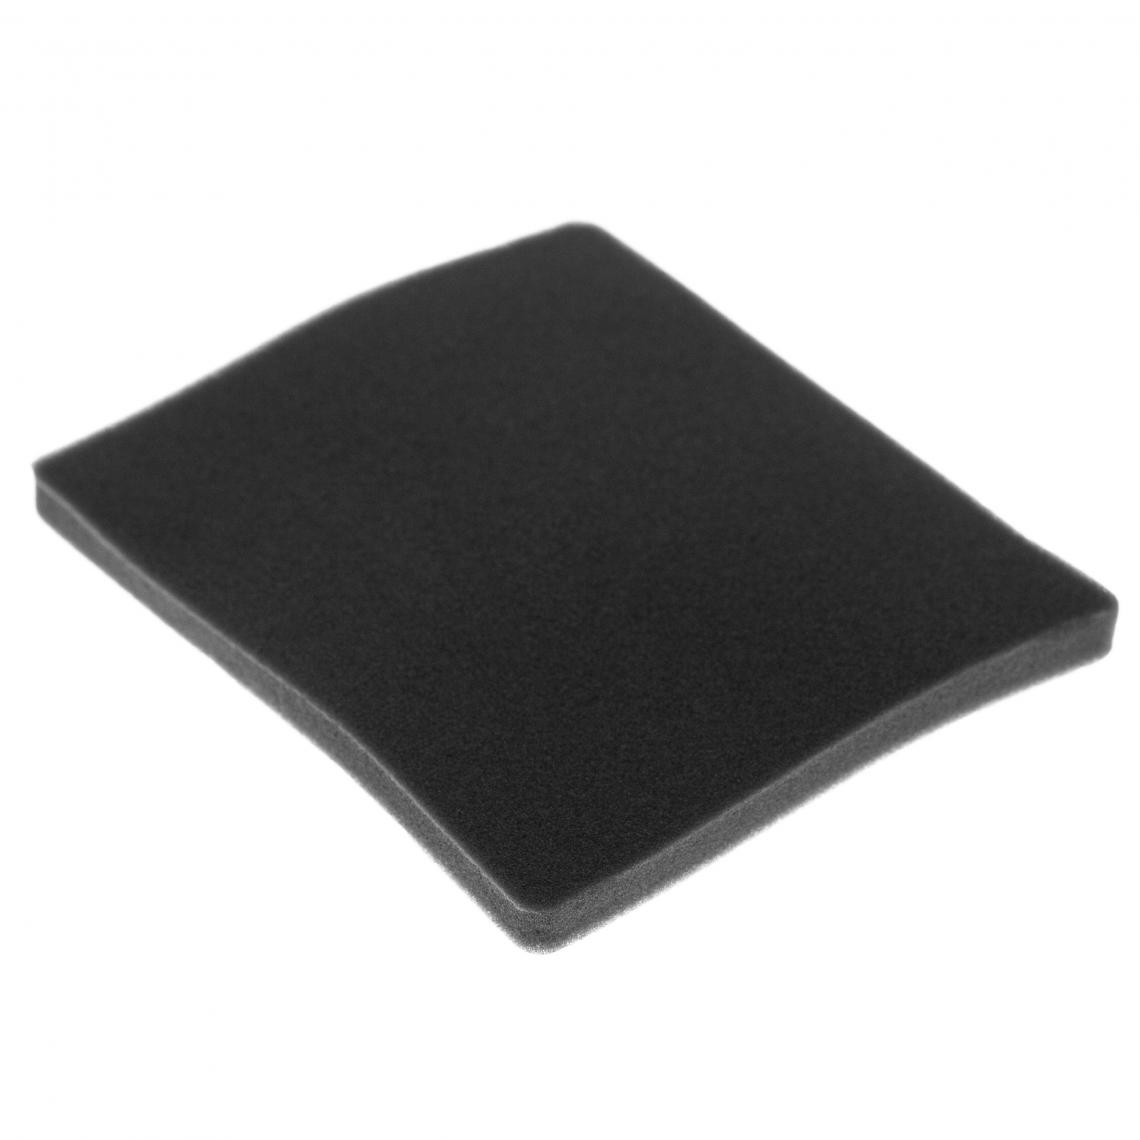 Vhbw - vhbw Filtre compatible avec Electrolux ZCX6201 FB (910286683) aspirateur - filtre de sortie d'air (filtre éponge), noir - Accessoire entretien des sols